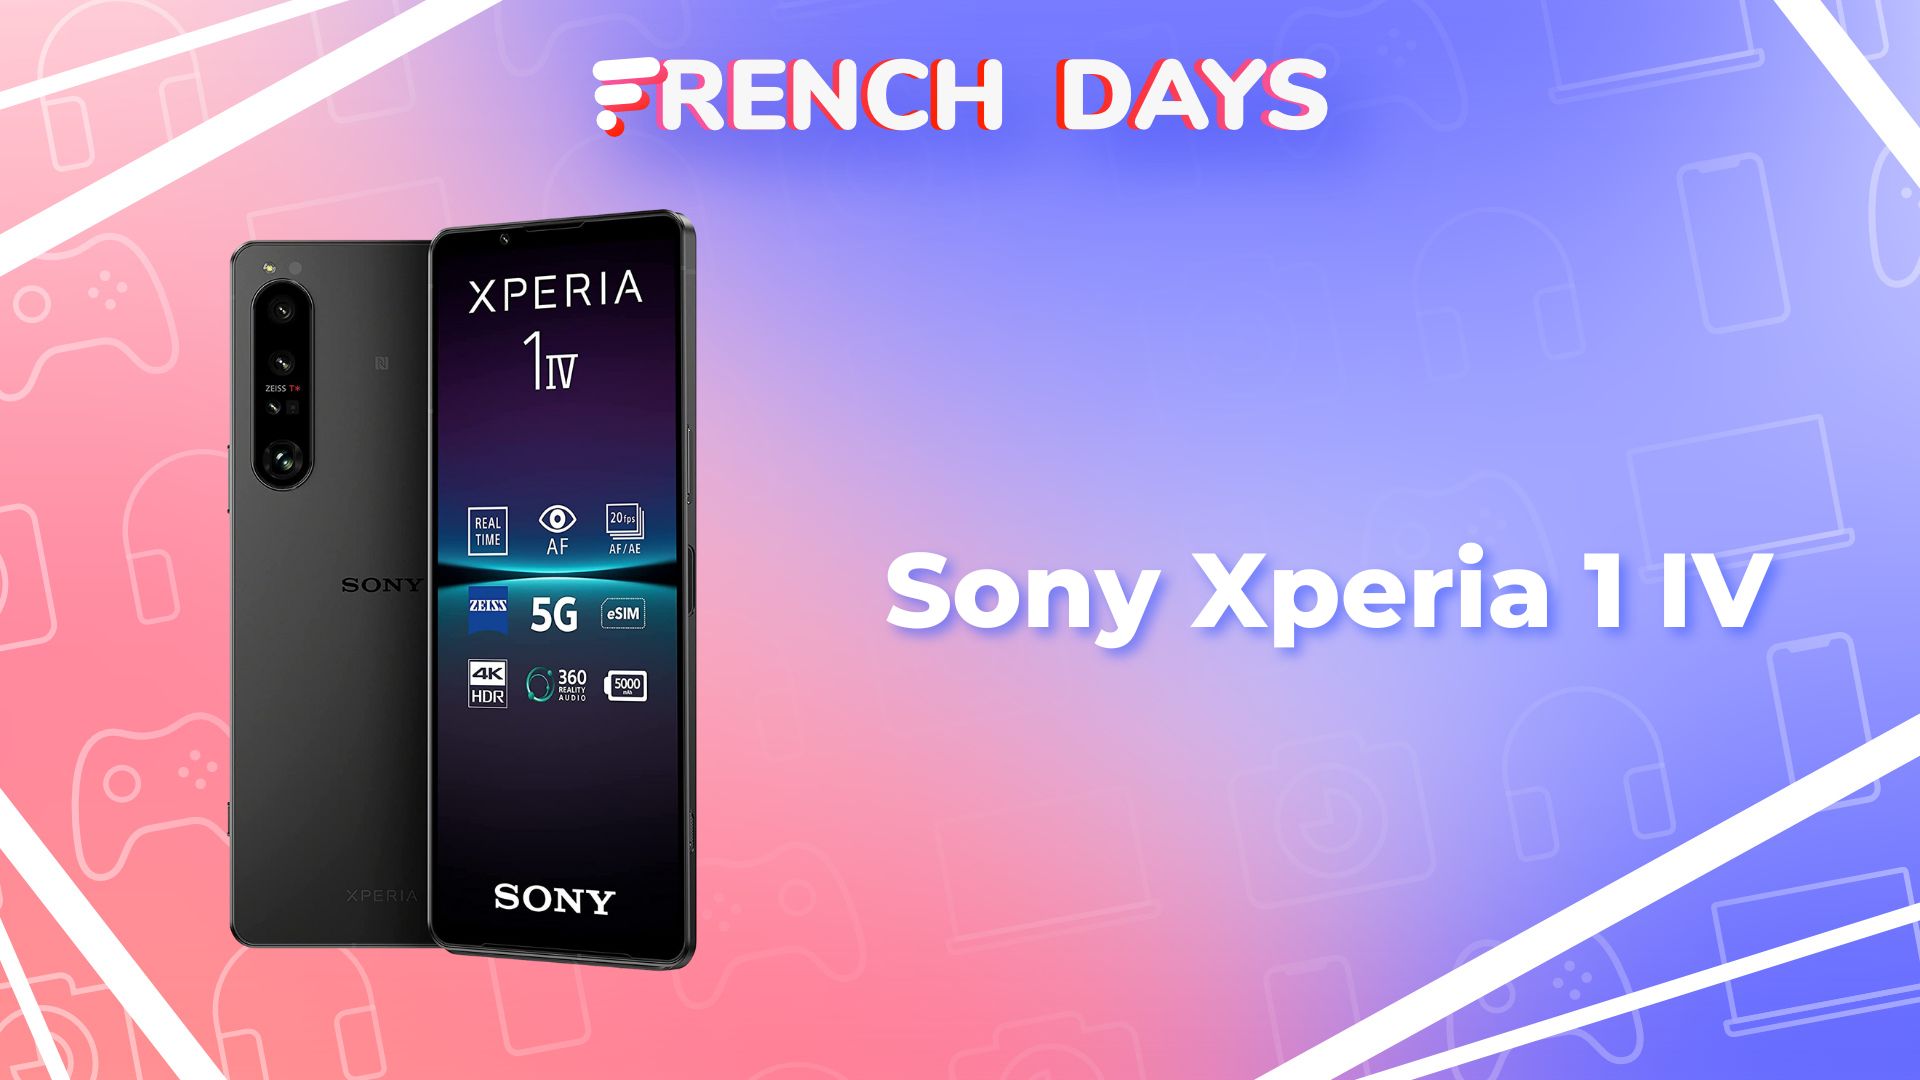 Mobiles Sony Xperia au meilleur prix - Choisissez un forfait - Orange